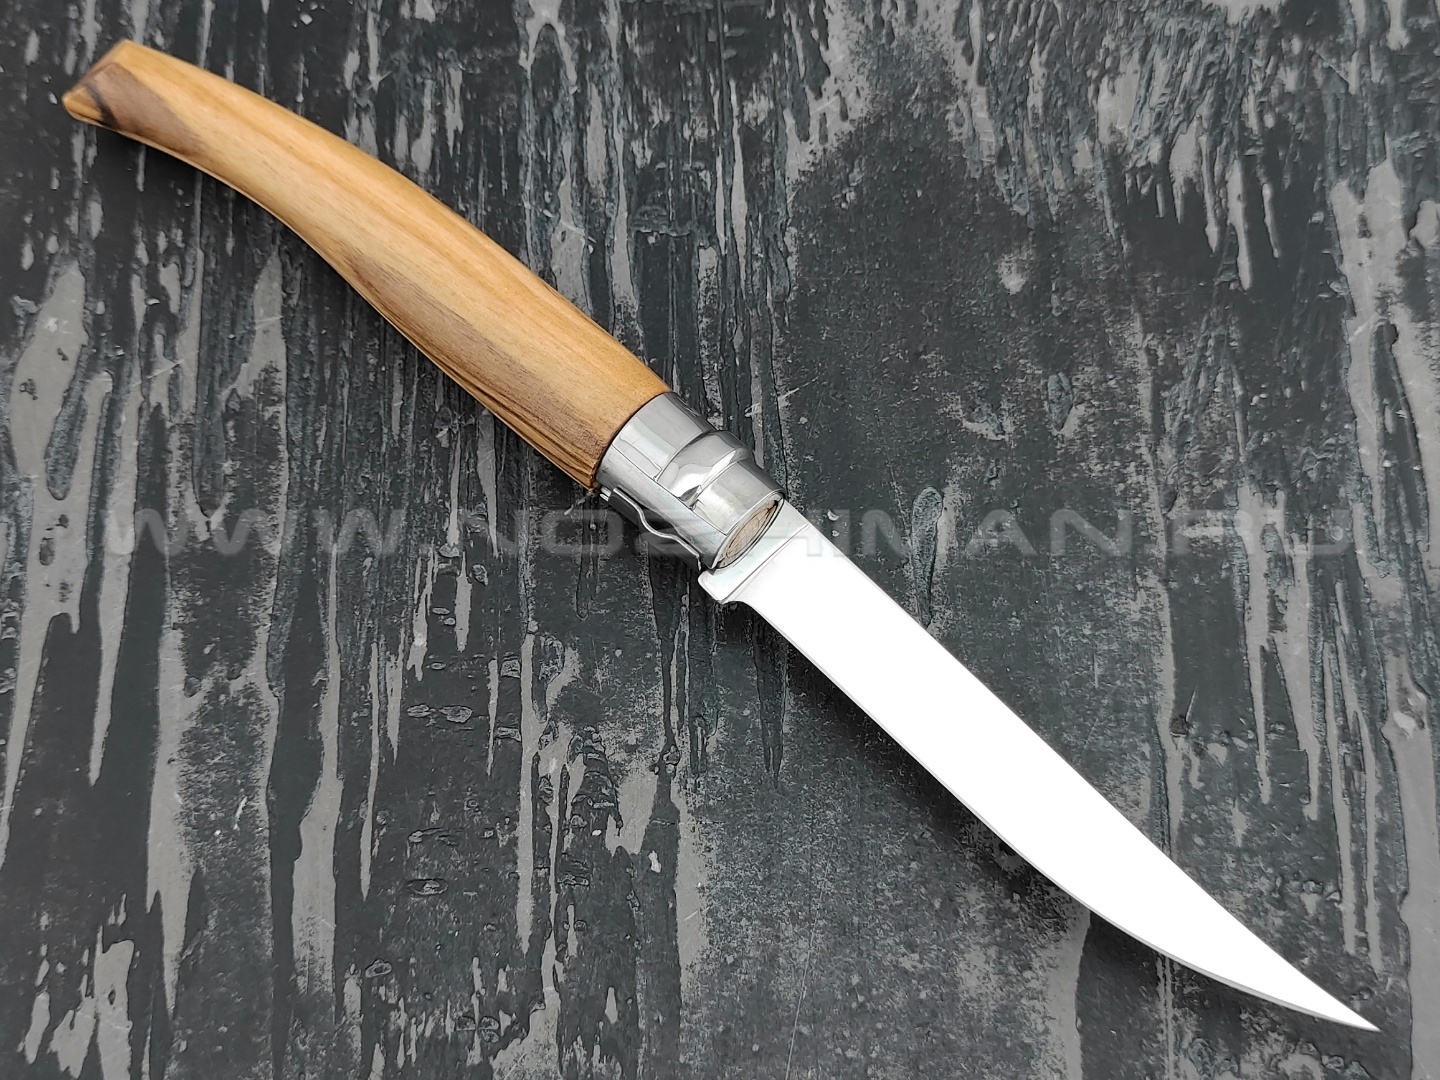 Нож Opinel складной филейный №10 000645 сталь Sandvik 12C27, рукоять олива